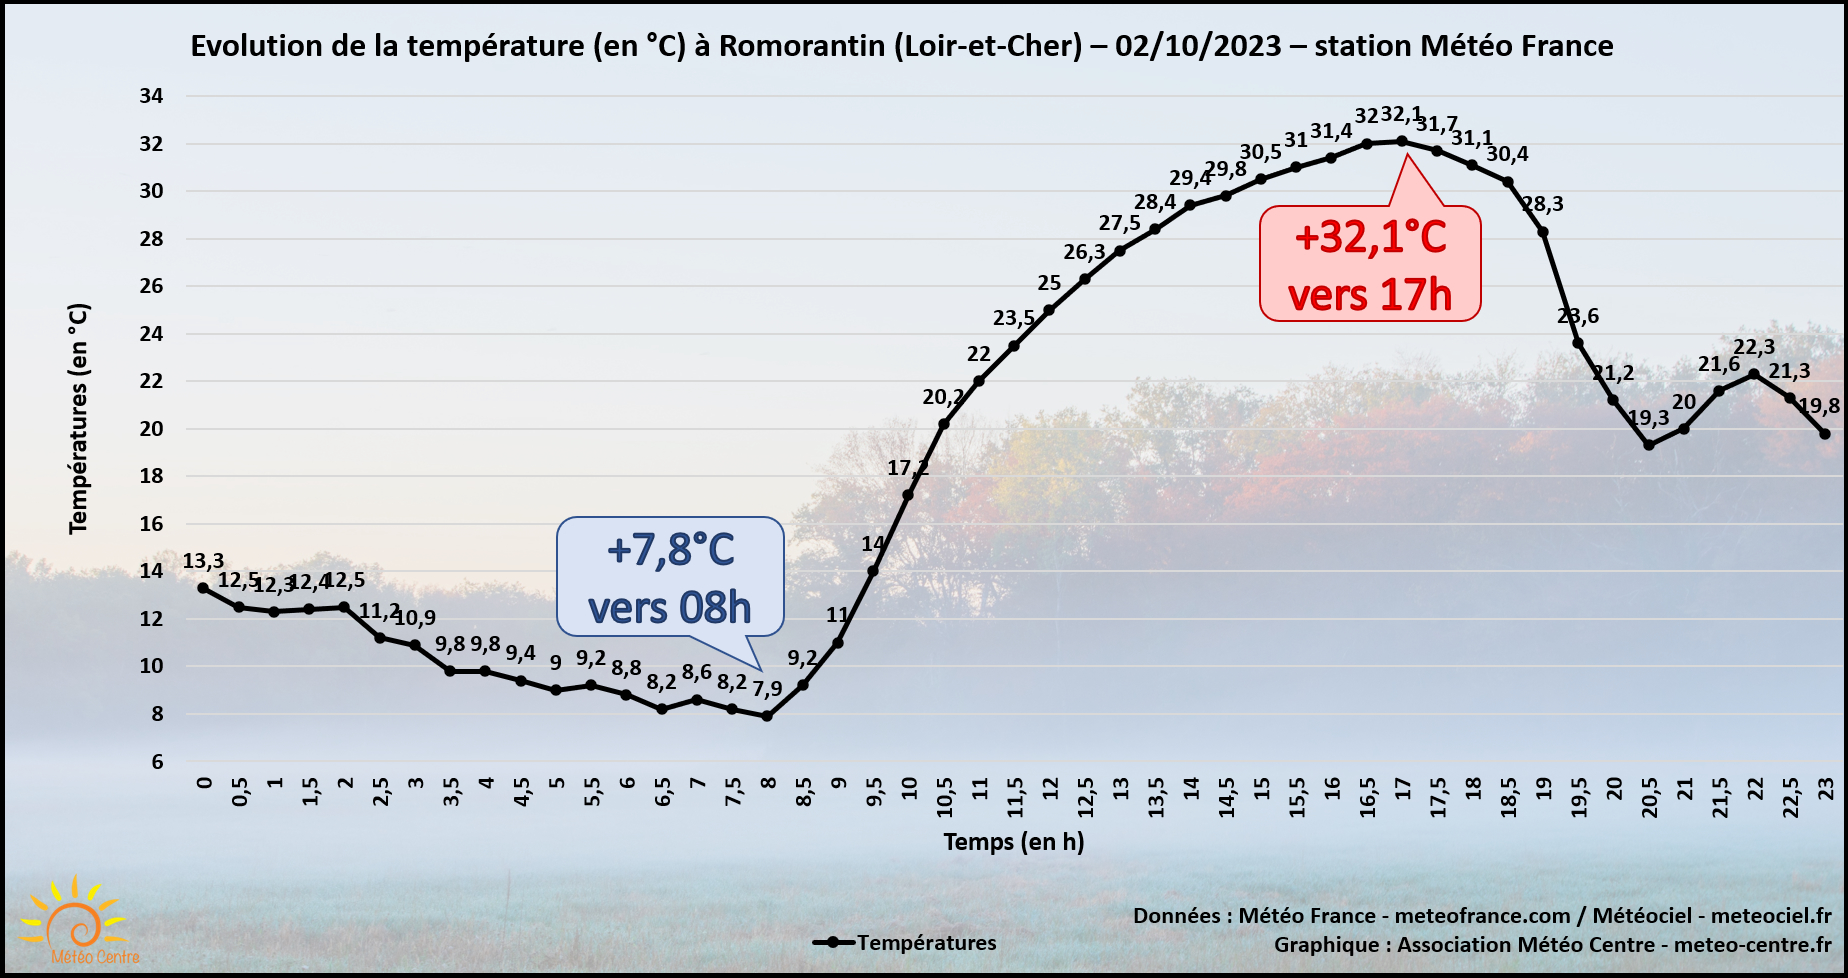 Evolution de la température à Romorantin (Loir-et-Cher) ce lundi 2 octobre 2023 (copyright : Association Météo Centre).